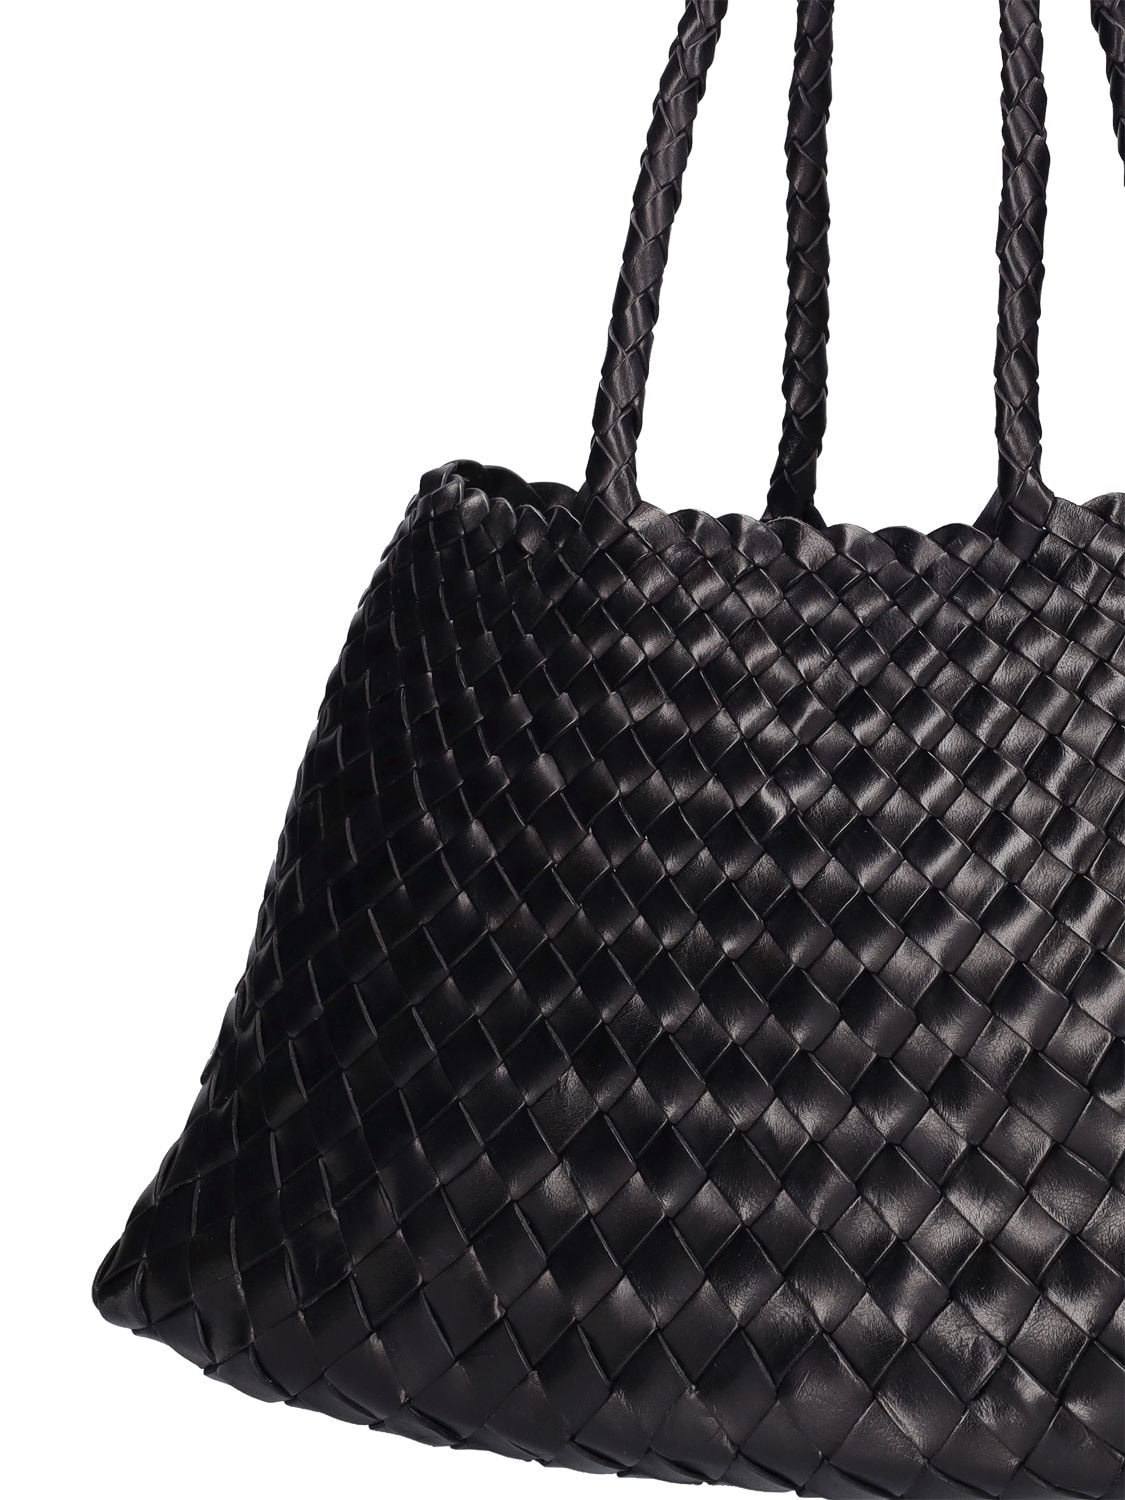 Shop Dragon Diffusion Big Santa Croce Leather Tote Bag In Black